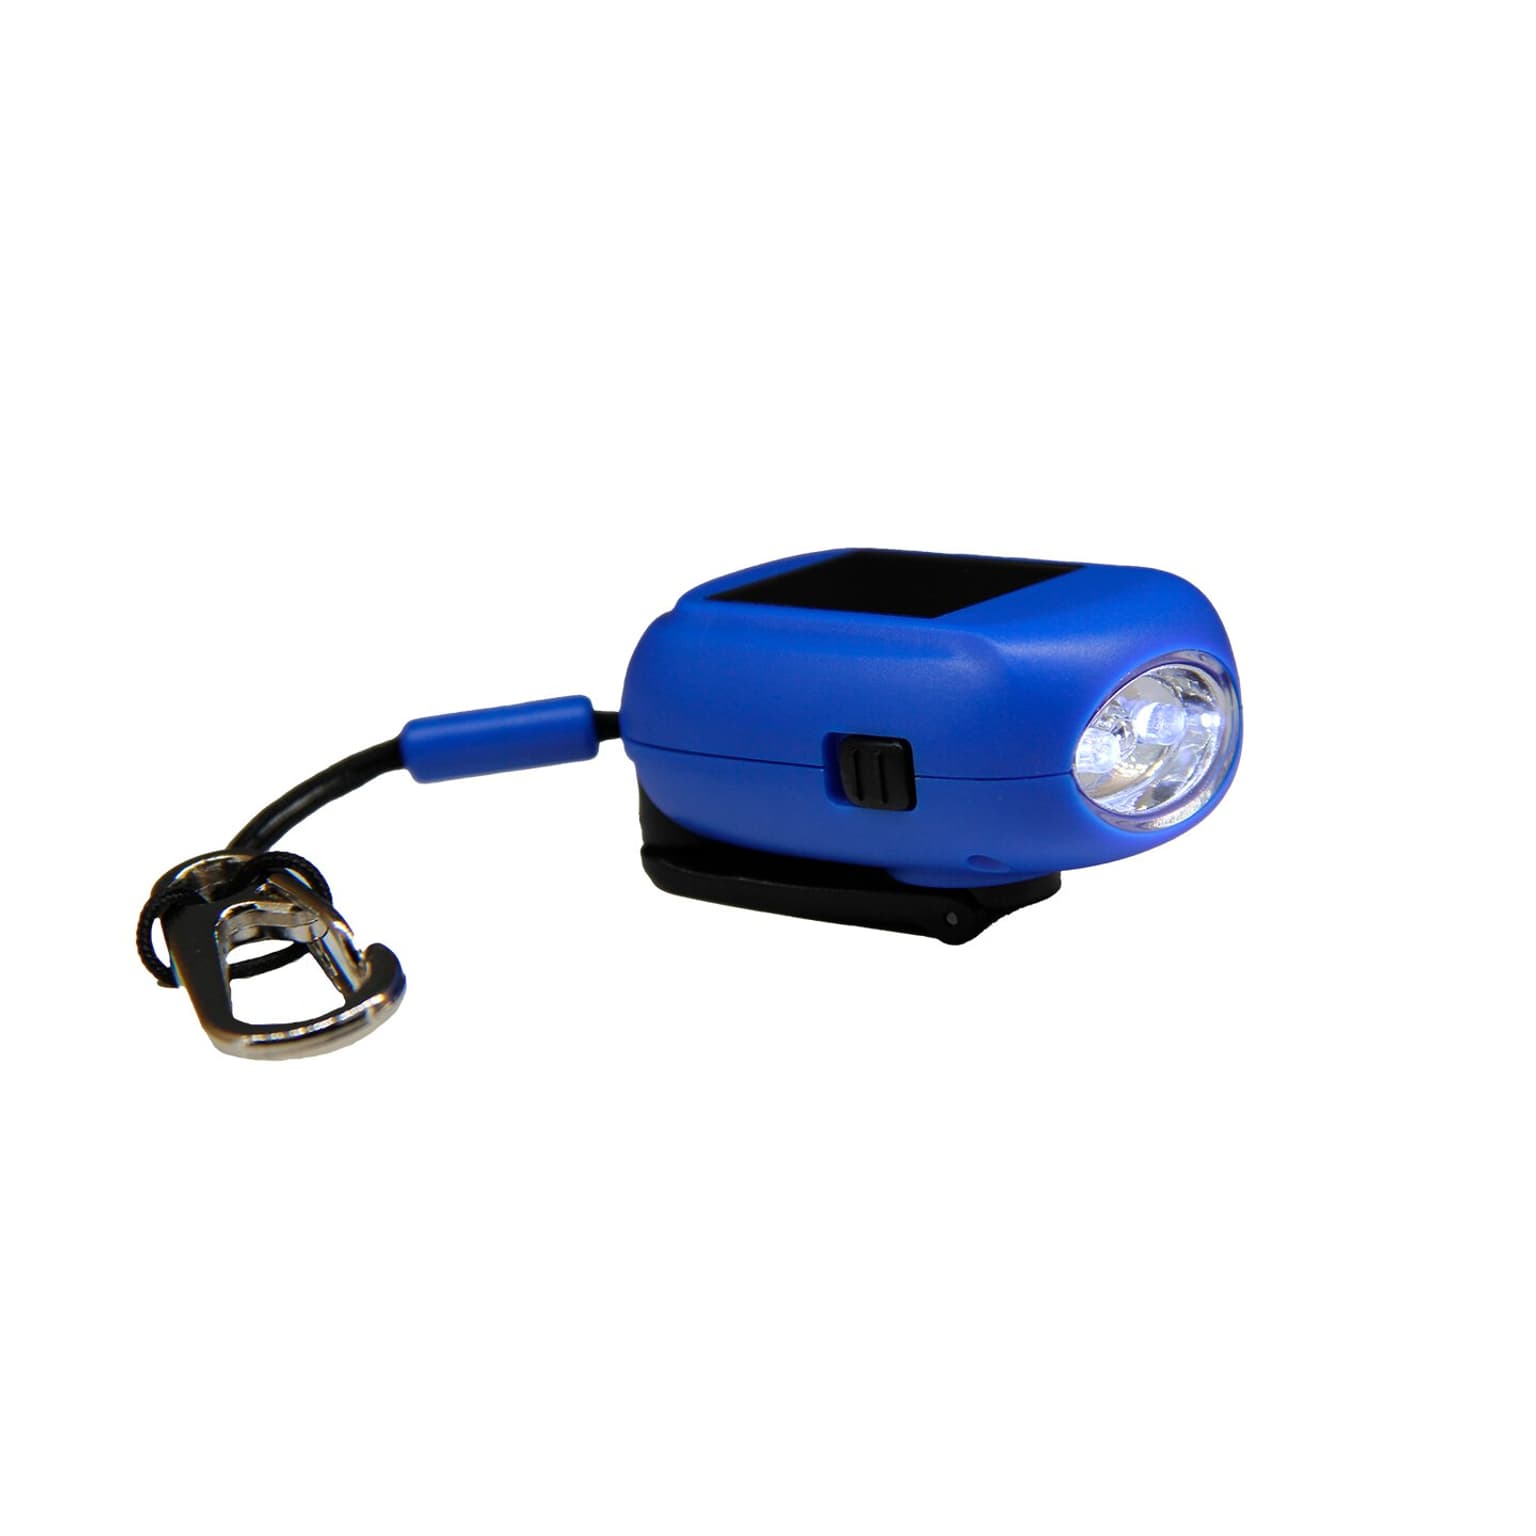 Essential Elements Essential Elements Mini Taschenlampe Recycled inkl. Karabiner Taschenlampe blu 1